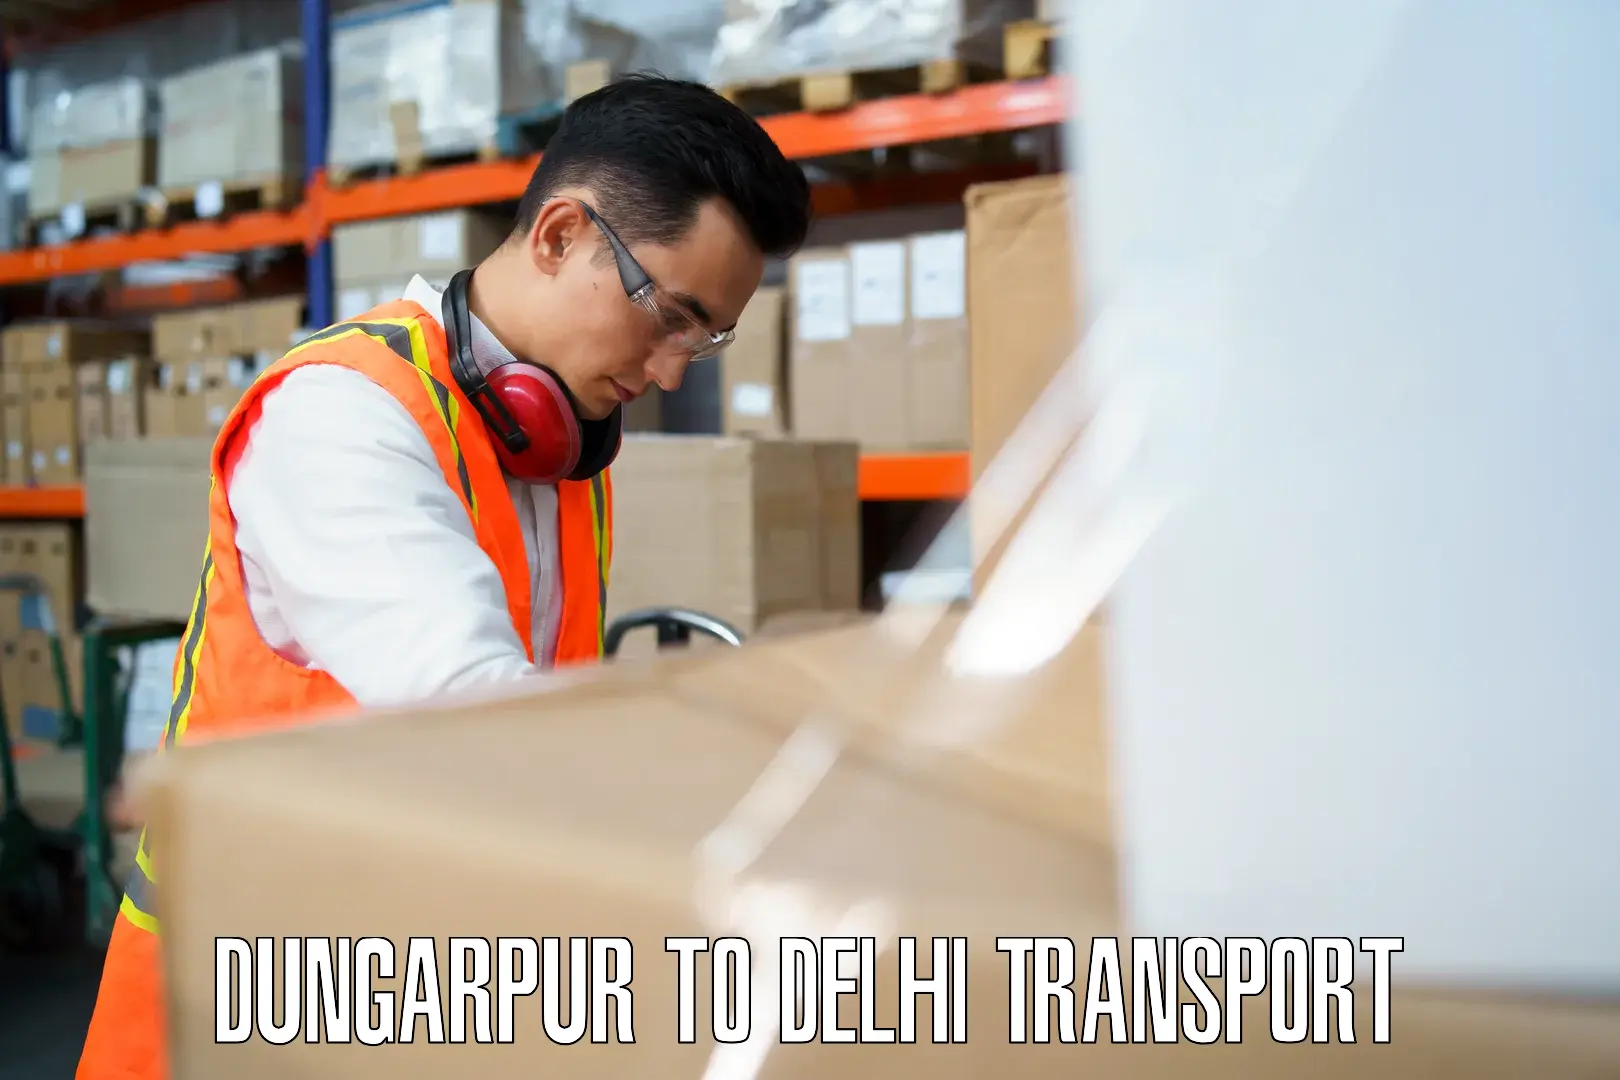 Transport shared services in Dungarpur to Ashok Vihar